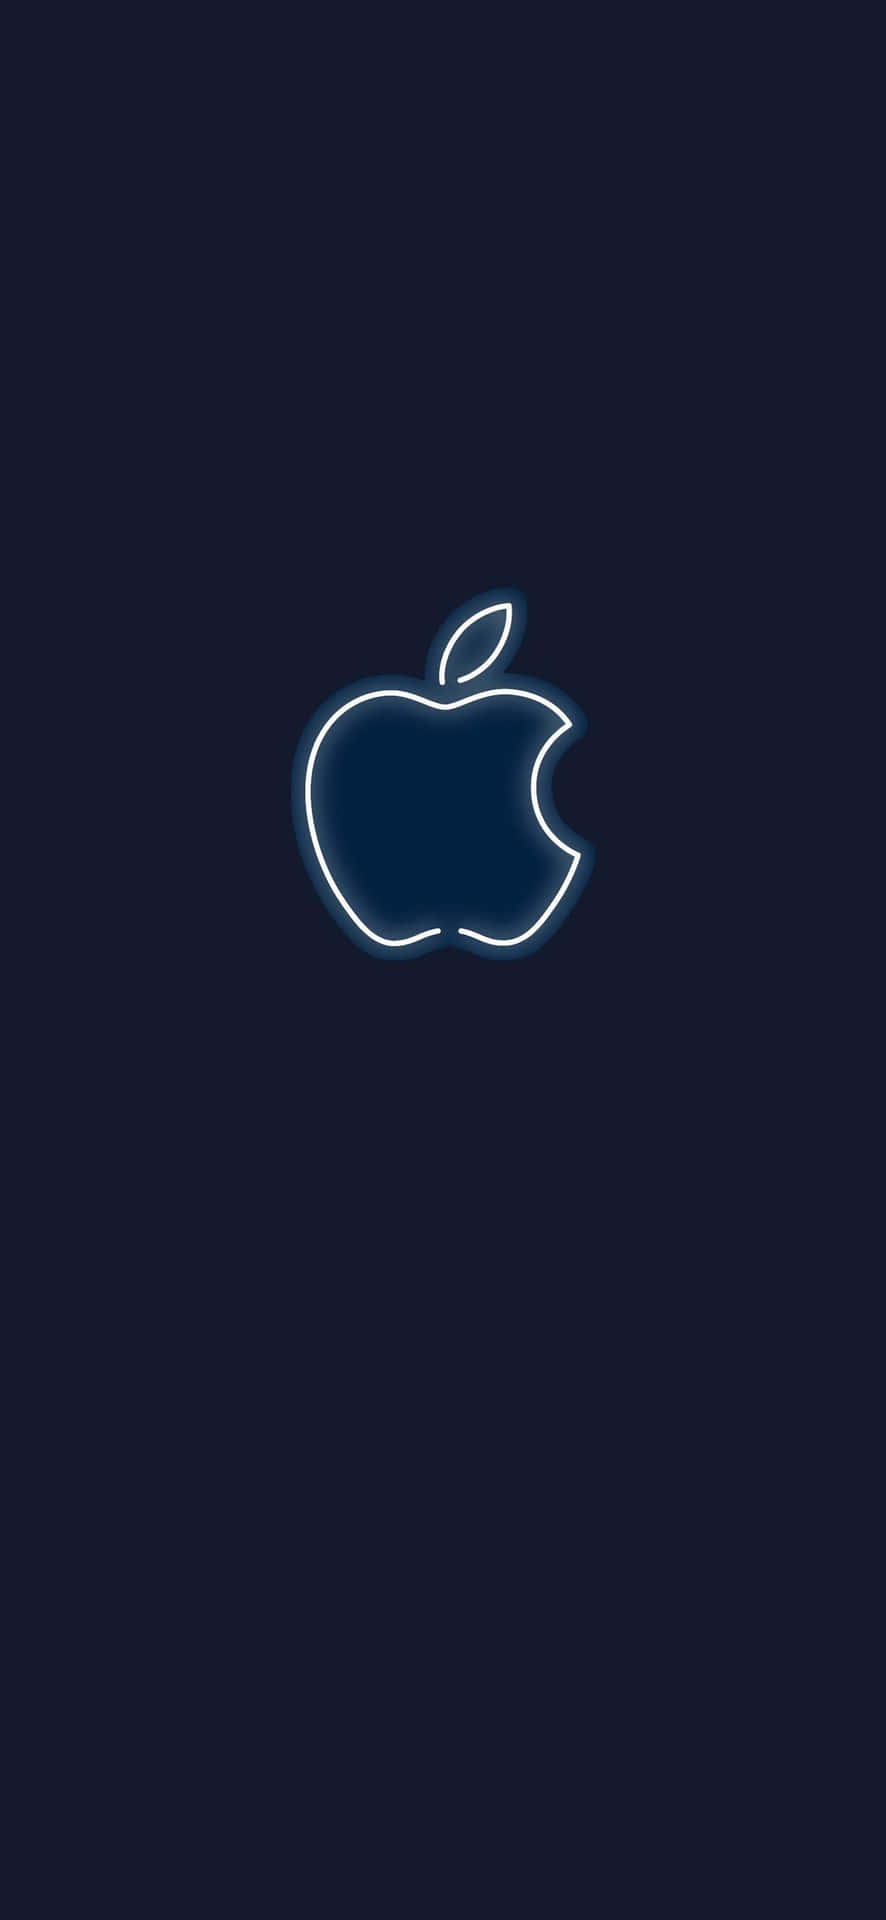 Logoblanco Neón Increíble Hd De Apple Para Iphone. Fondo de pantalla